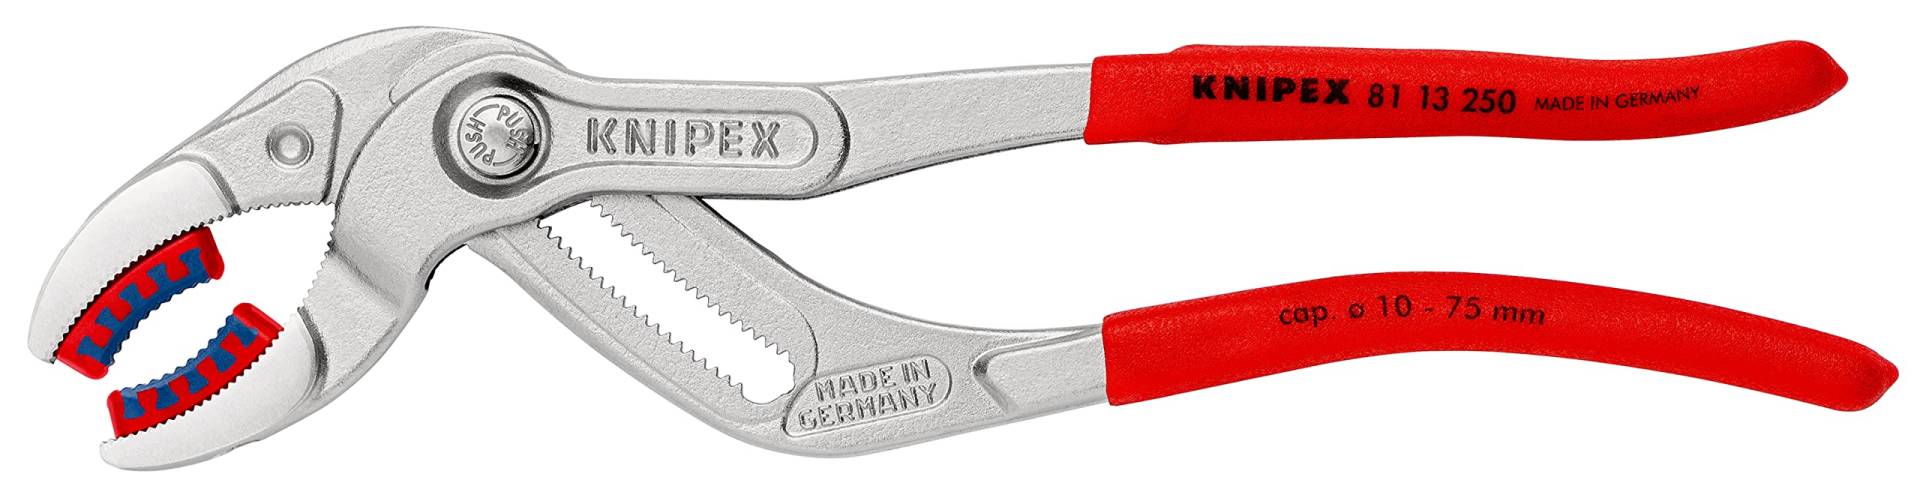 KNIPEX SpeedGrip, Siphonzange | Connectorenzange, mit wechselbaren Kunststoff-Schonbacken, atramentiert, 250 mm (SB-Karte/Blister), 81 13 250 SB von Knipex